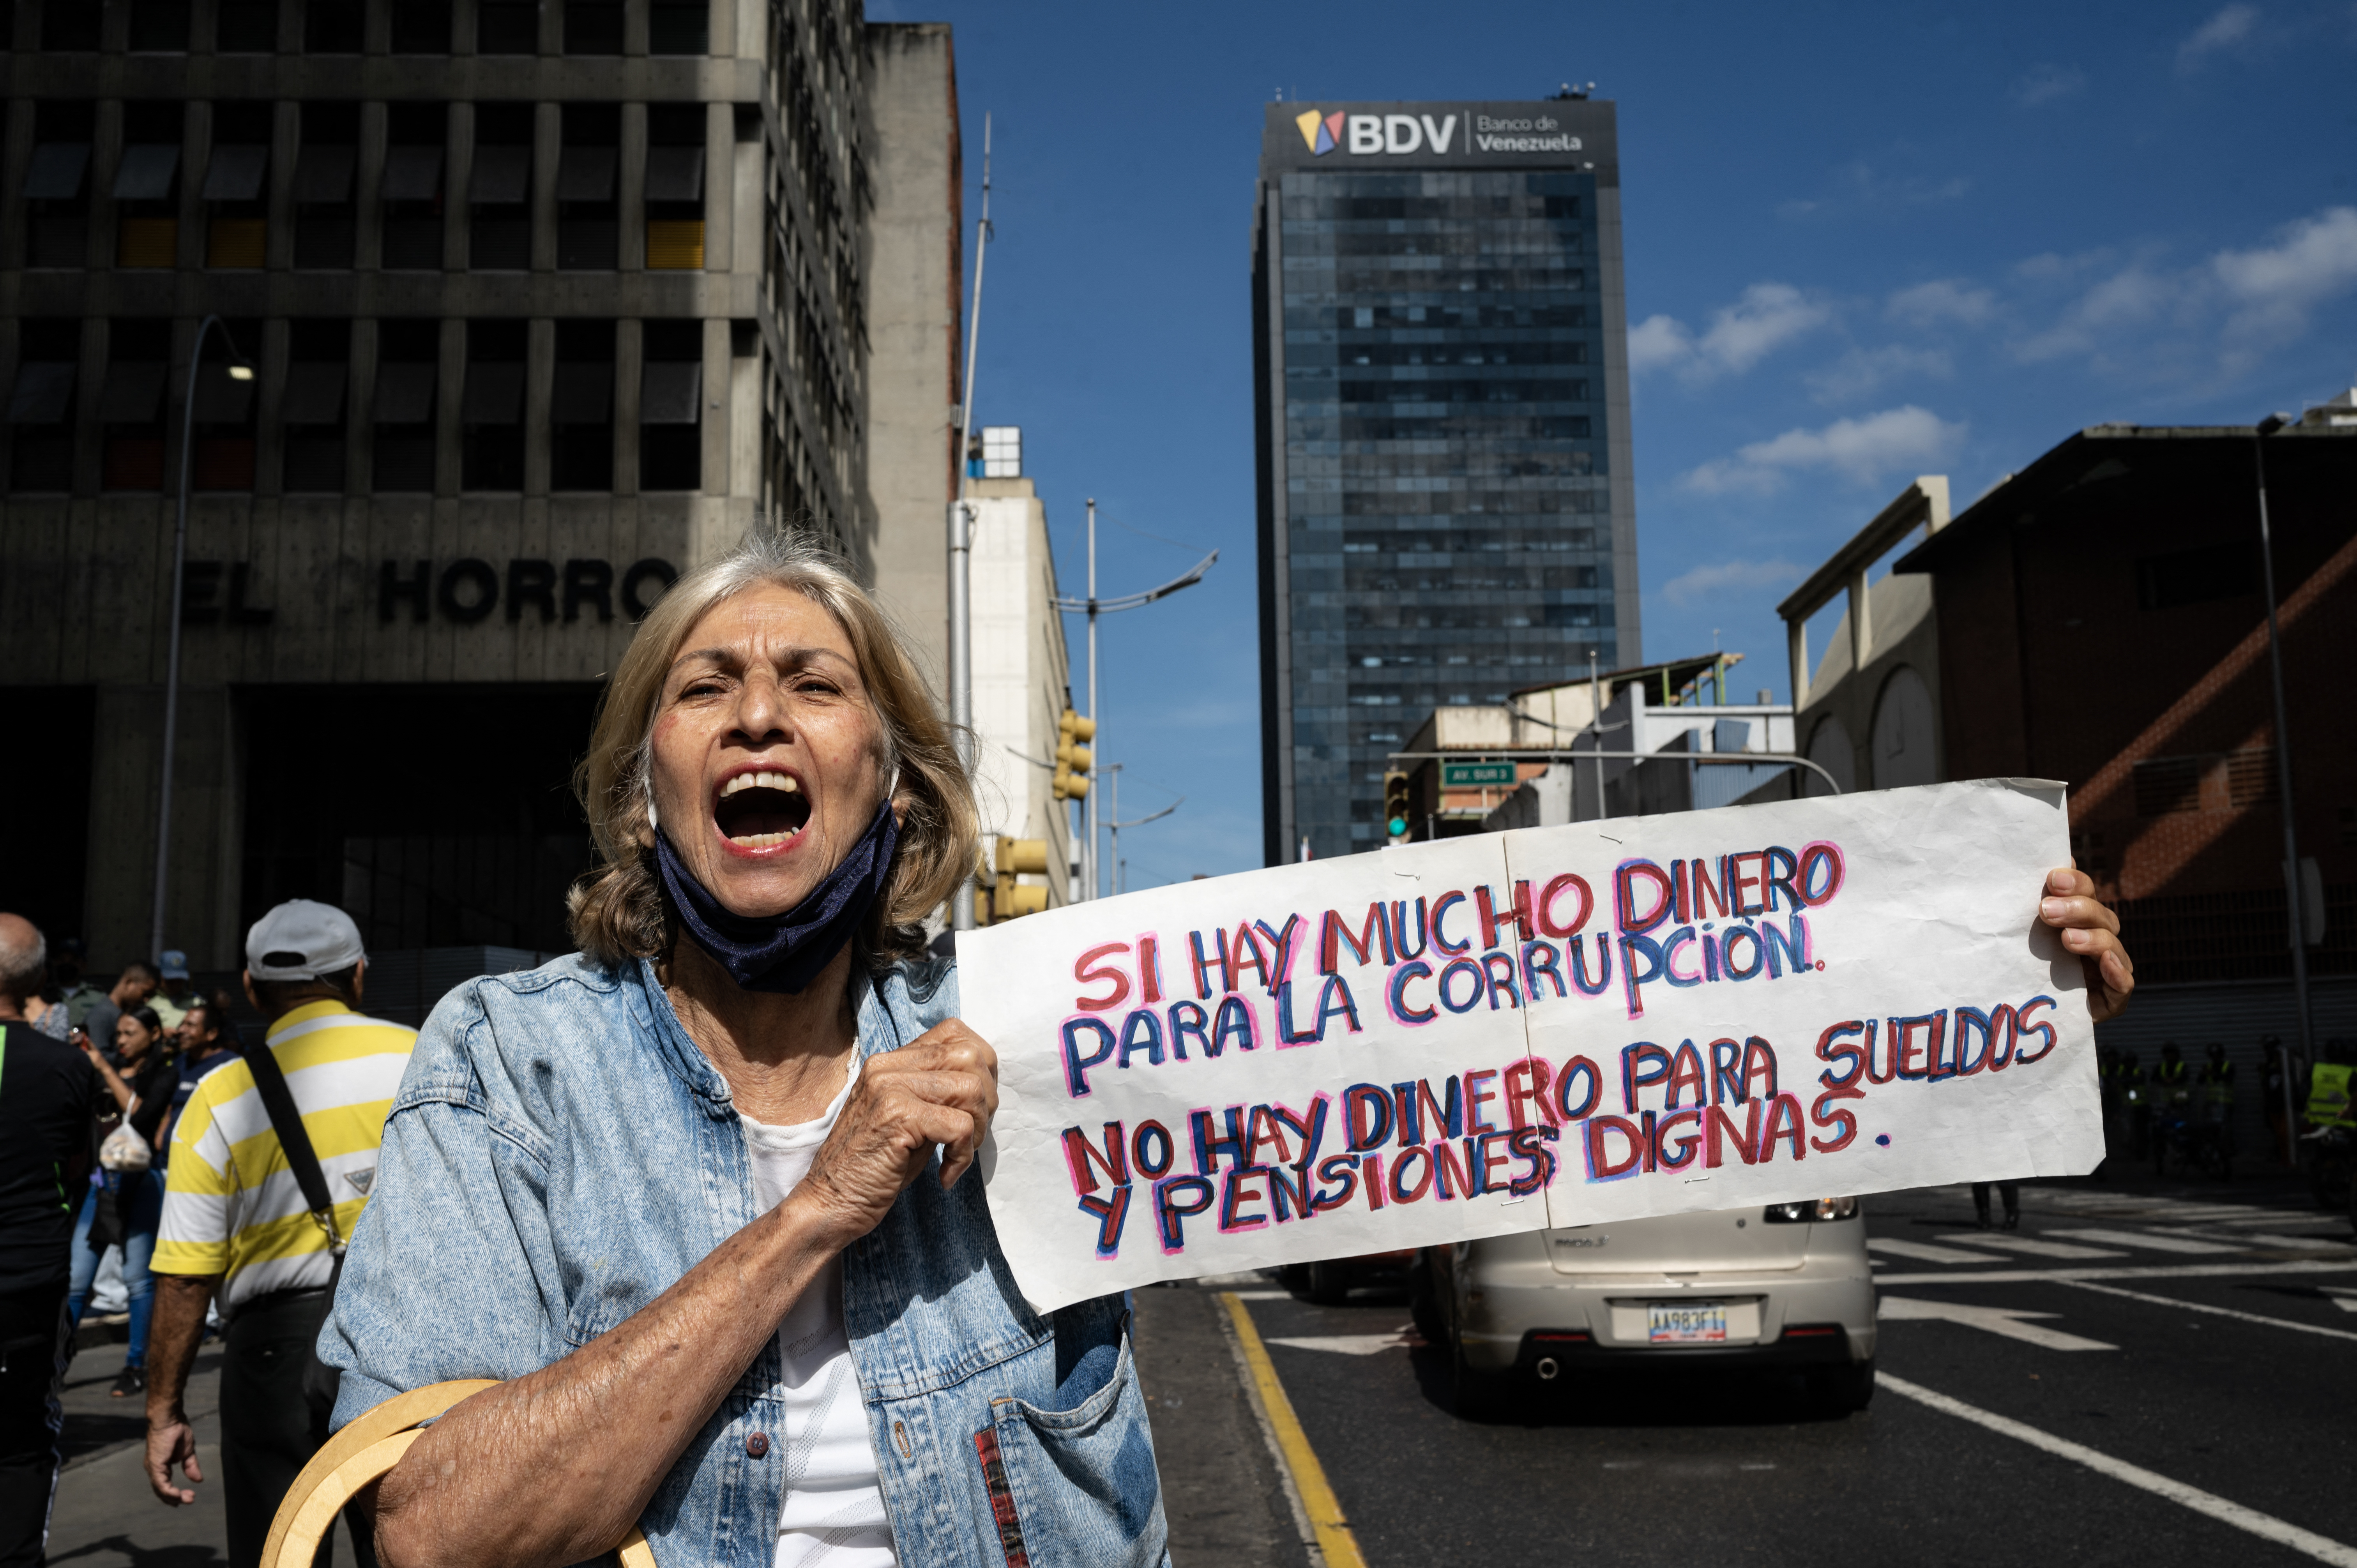 Una mujer grita consignas anticorrupción. (Yuri CORTEZ / AFP)